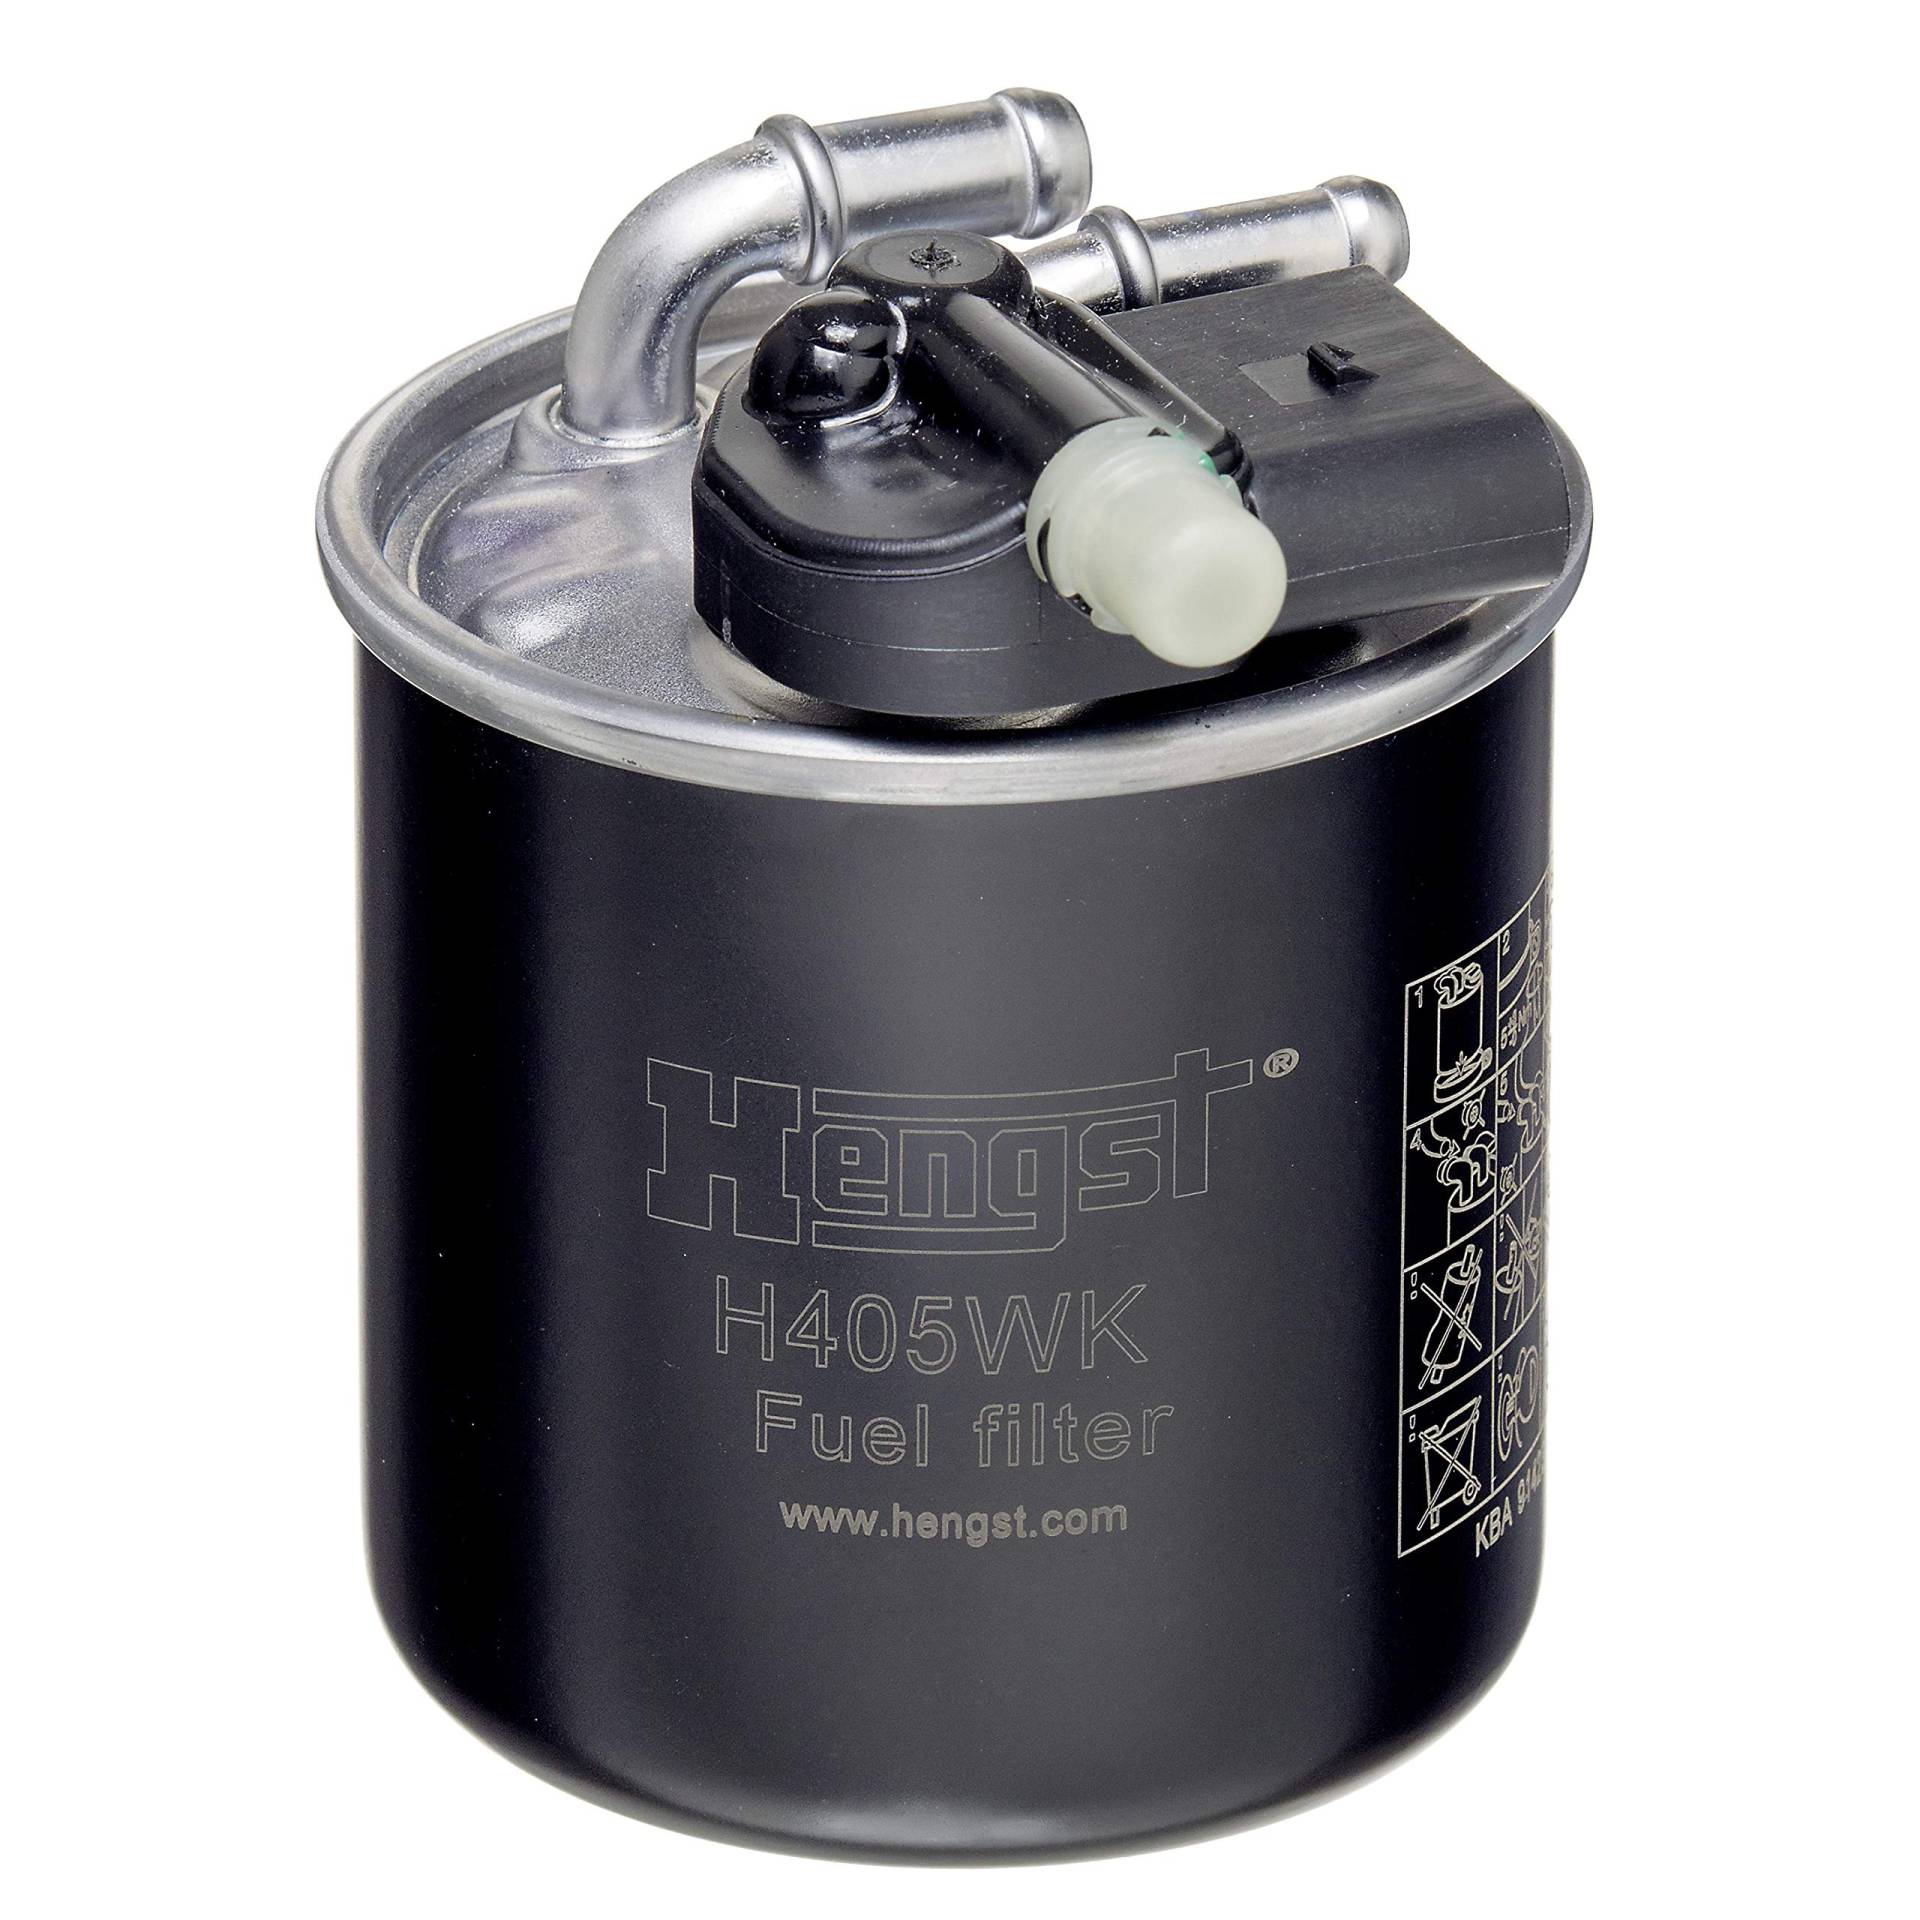 HENGST Kraftstoff-Leitungsfilter Type H405WK - Kraftstofffilter für PKW - Filter für Kraftstoff, Filter für Autos von Hengst